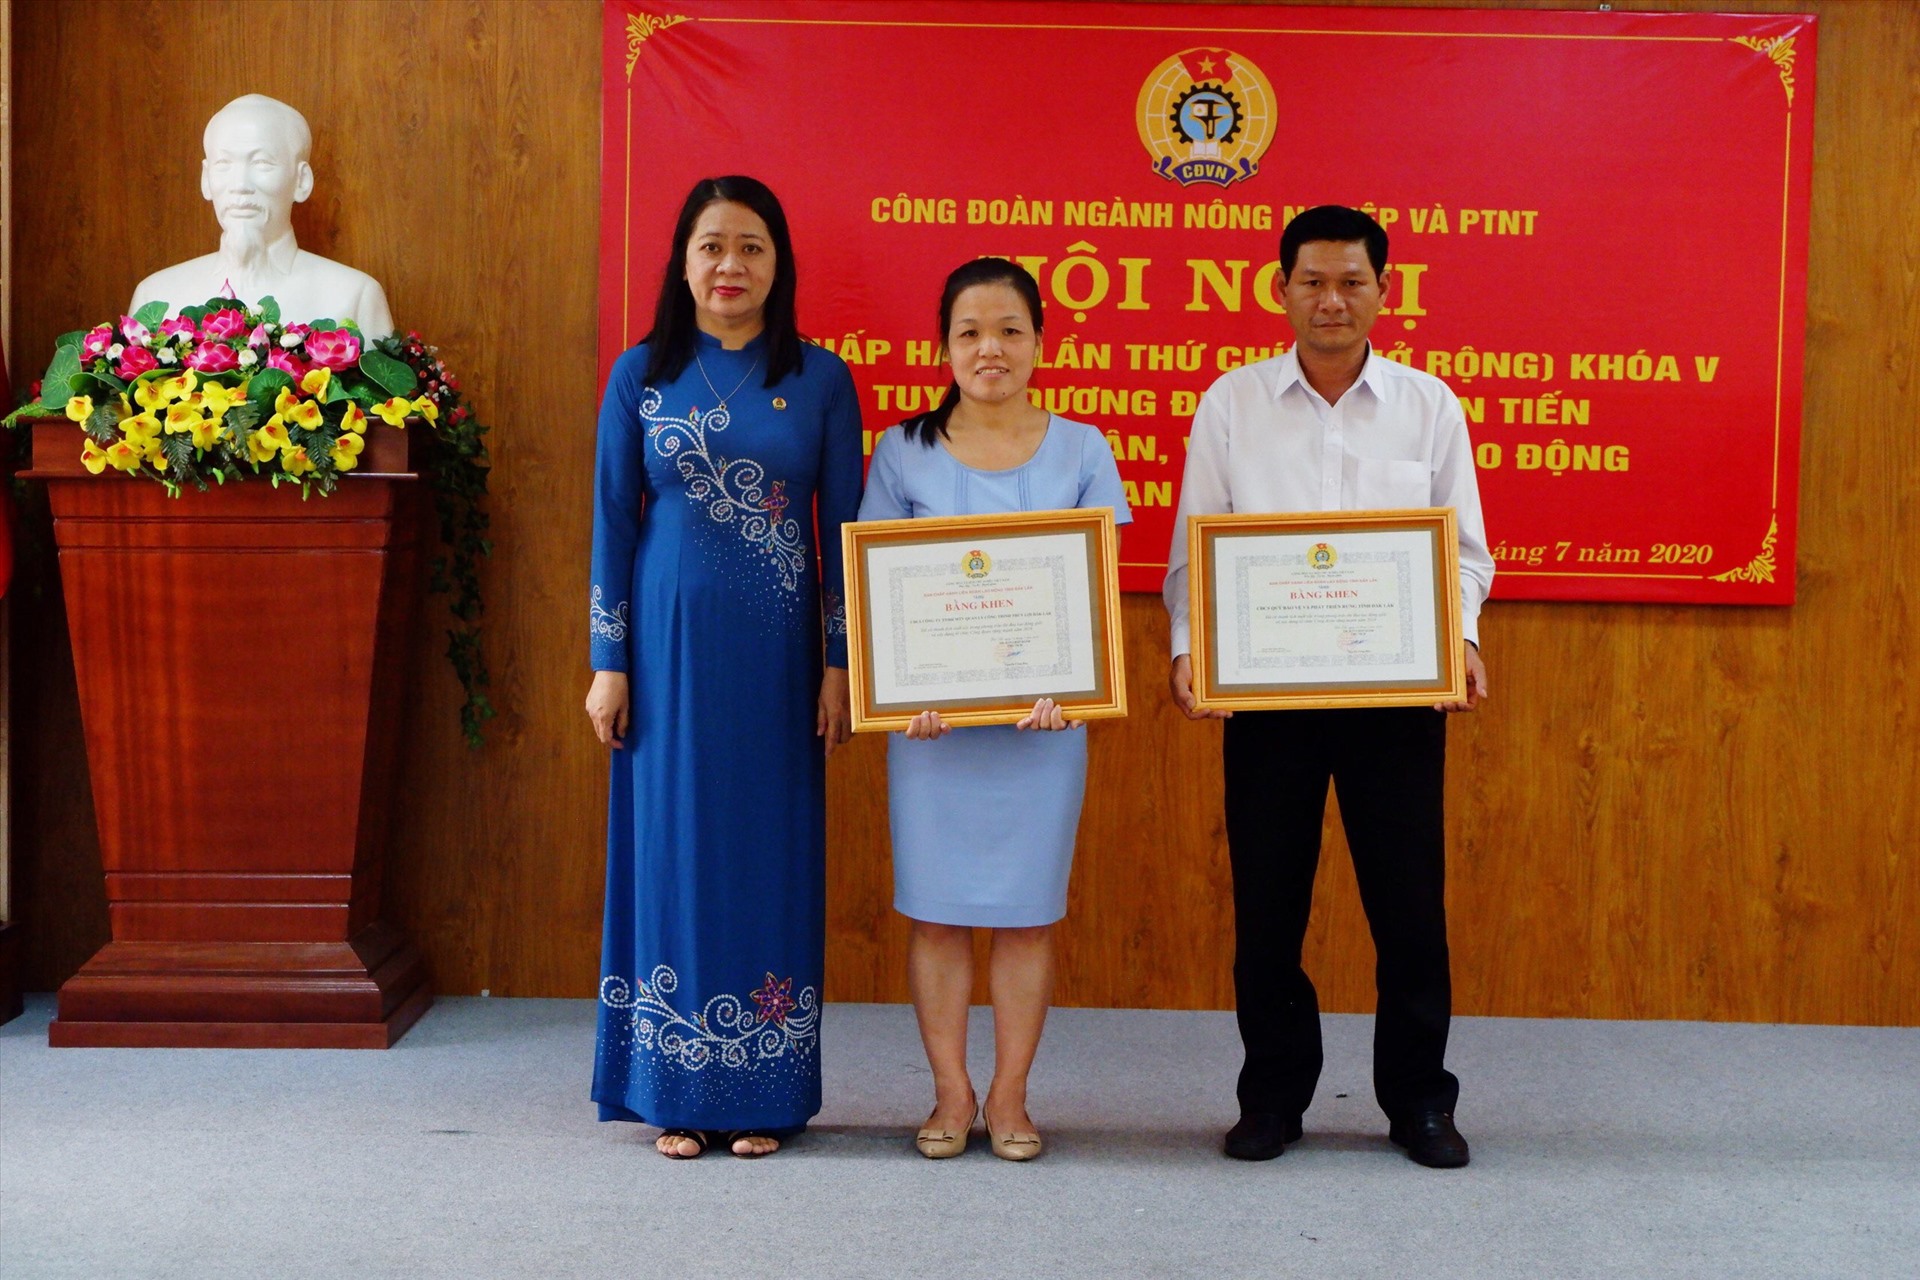 Đồng chí Võ Thị Hạnh - Phó Chủ tịch thường trực LĐLĐ Đắk Lắk trao Bằng khen của LĐLĐ tỉnh cho các tập thể và cá nhân thuộc Công đoàn ngành NNPTNT có thành tích xuất sắc trong hoạt động công đoàn.